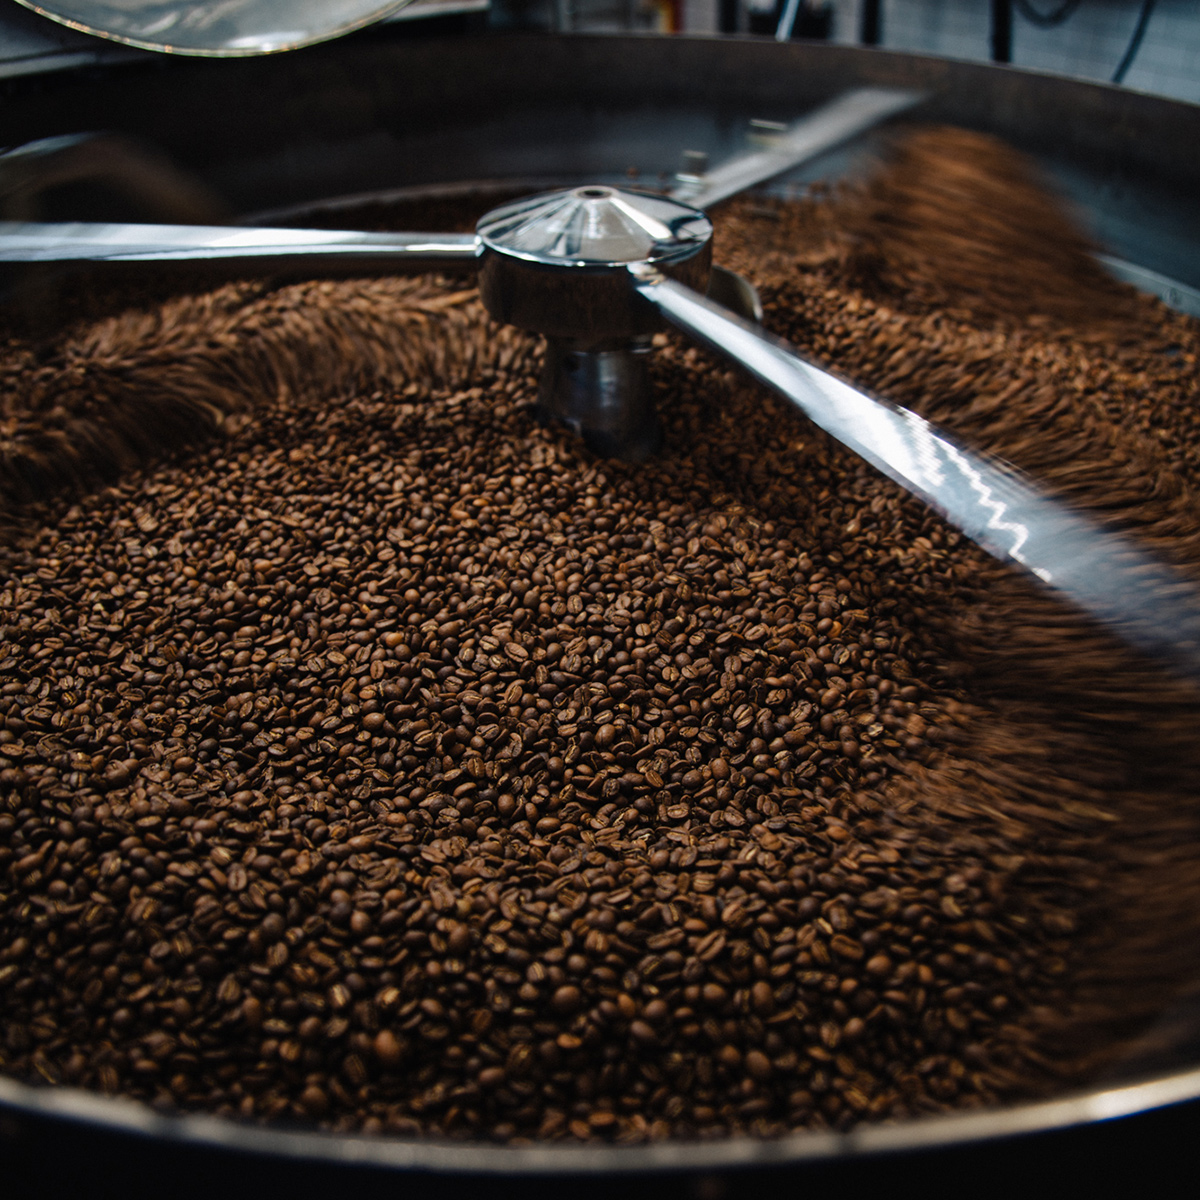 1日に200kgから300kgのコーヒー豆を焙煎している。